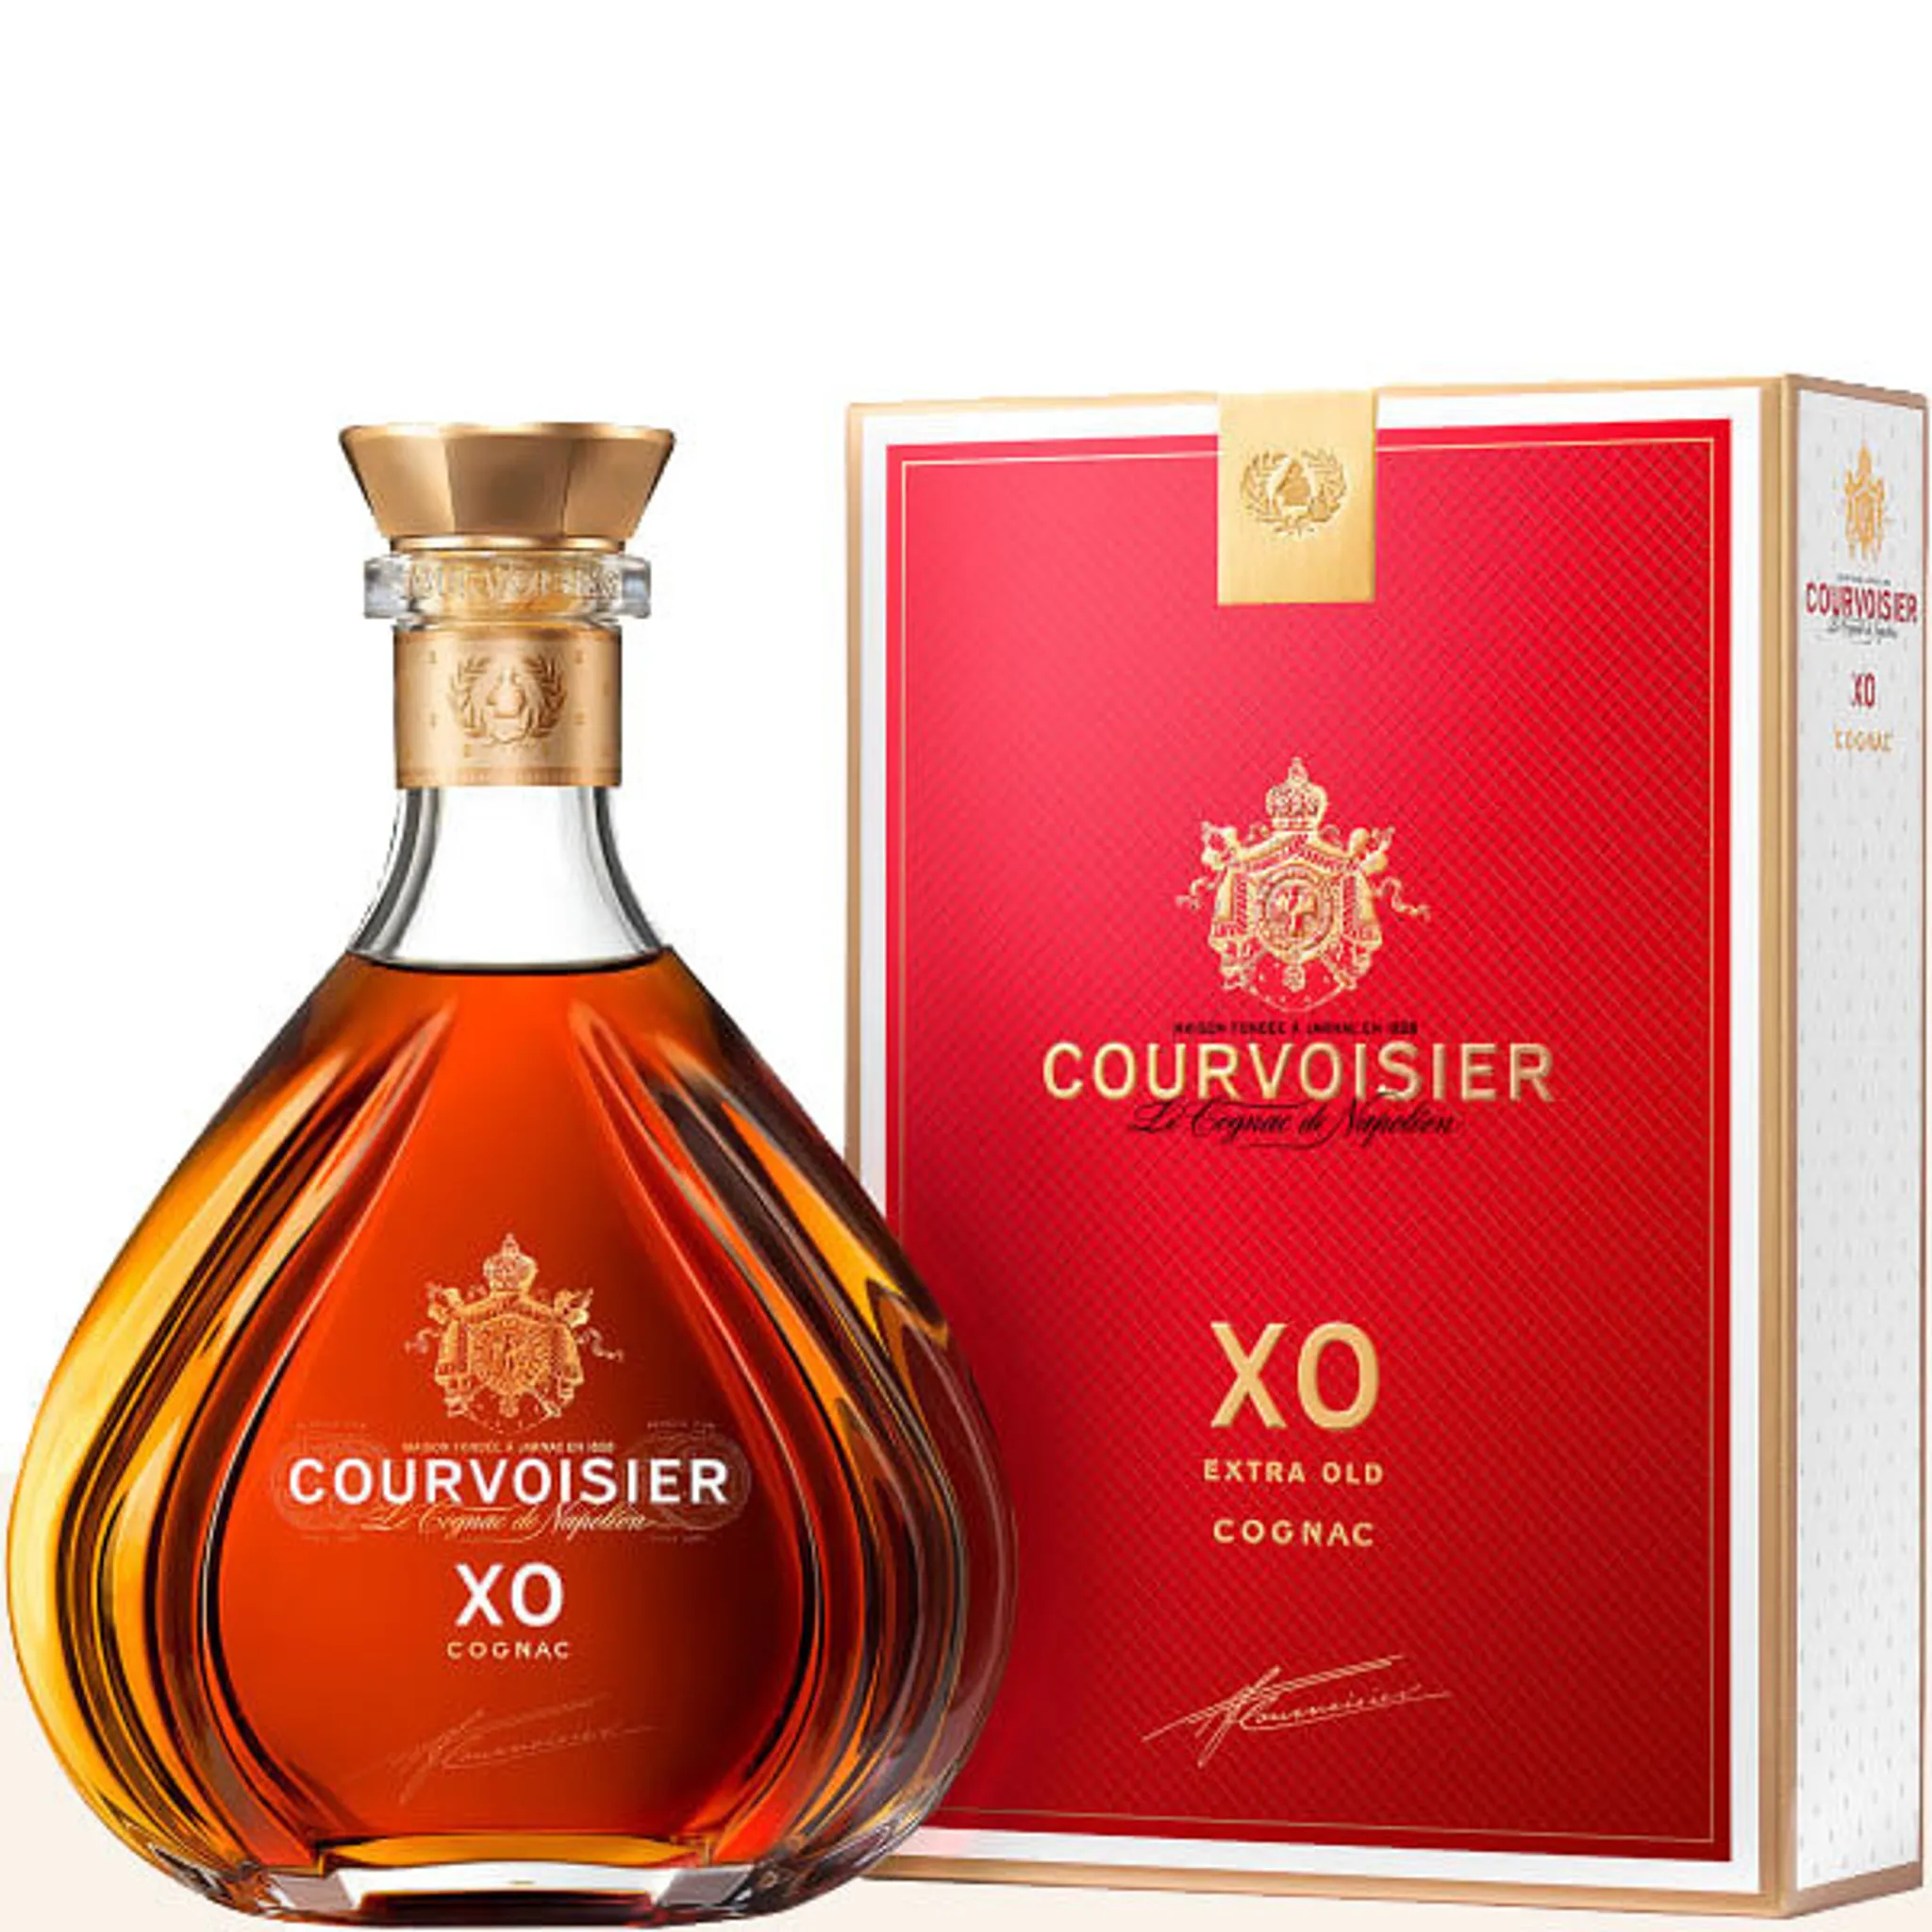 Courvoisier XO Cognac 40% in Vol. 0,7l